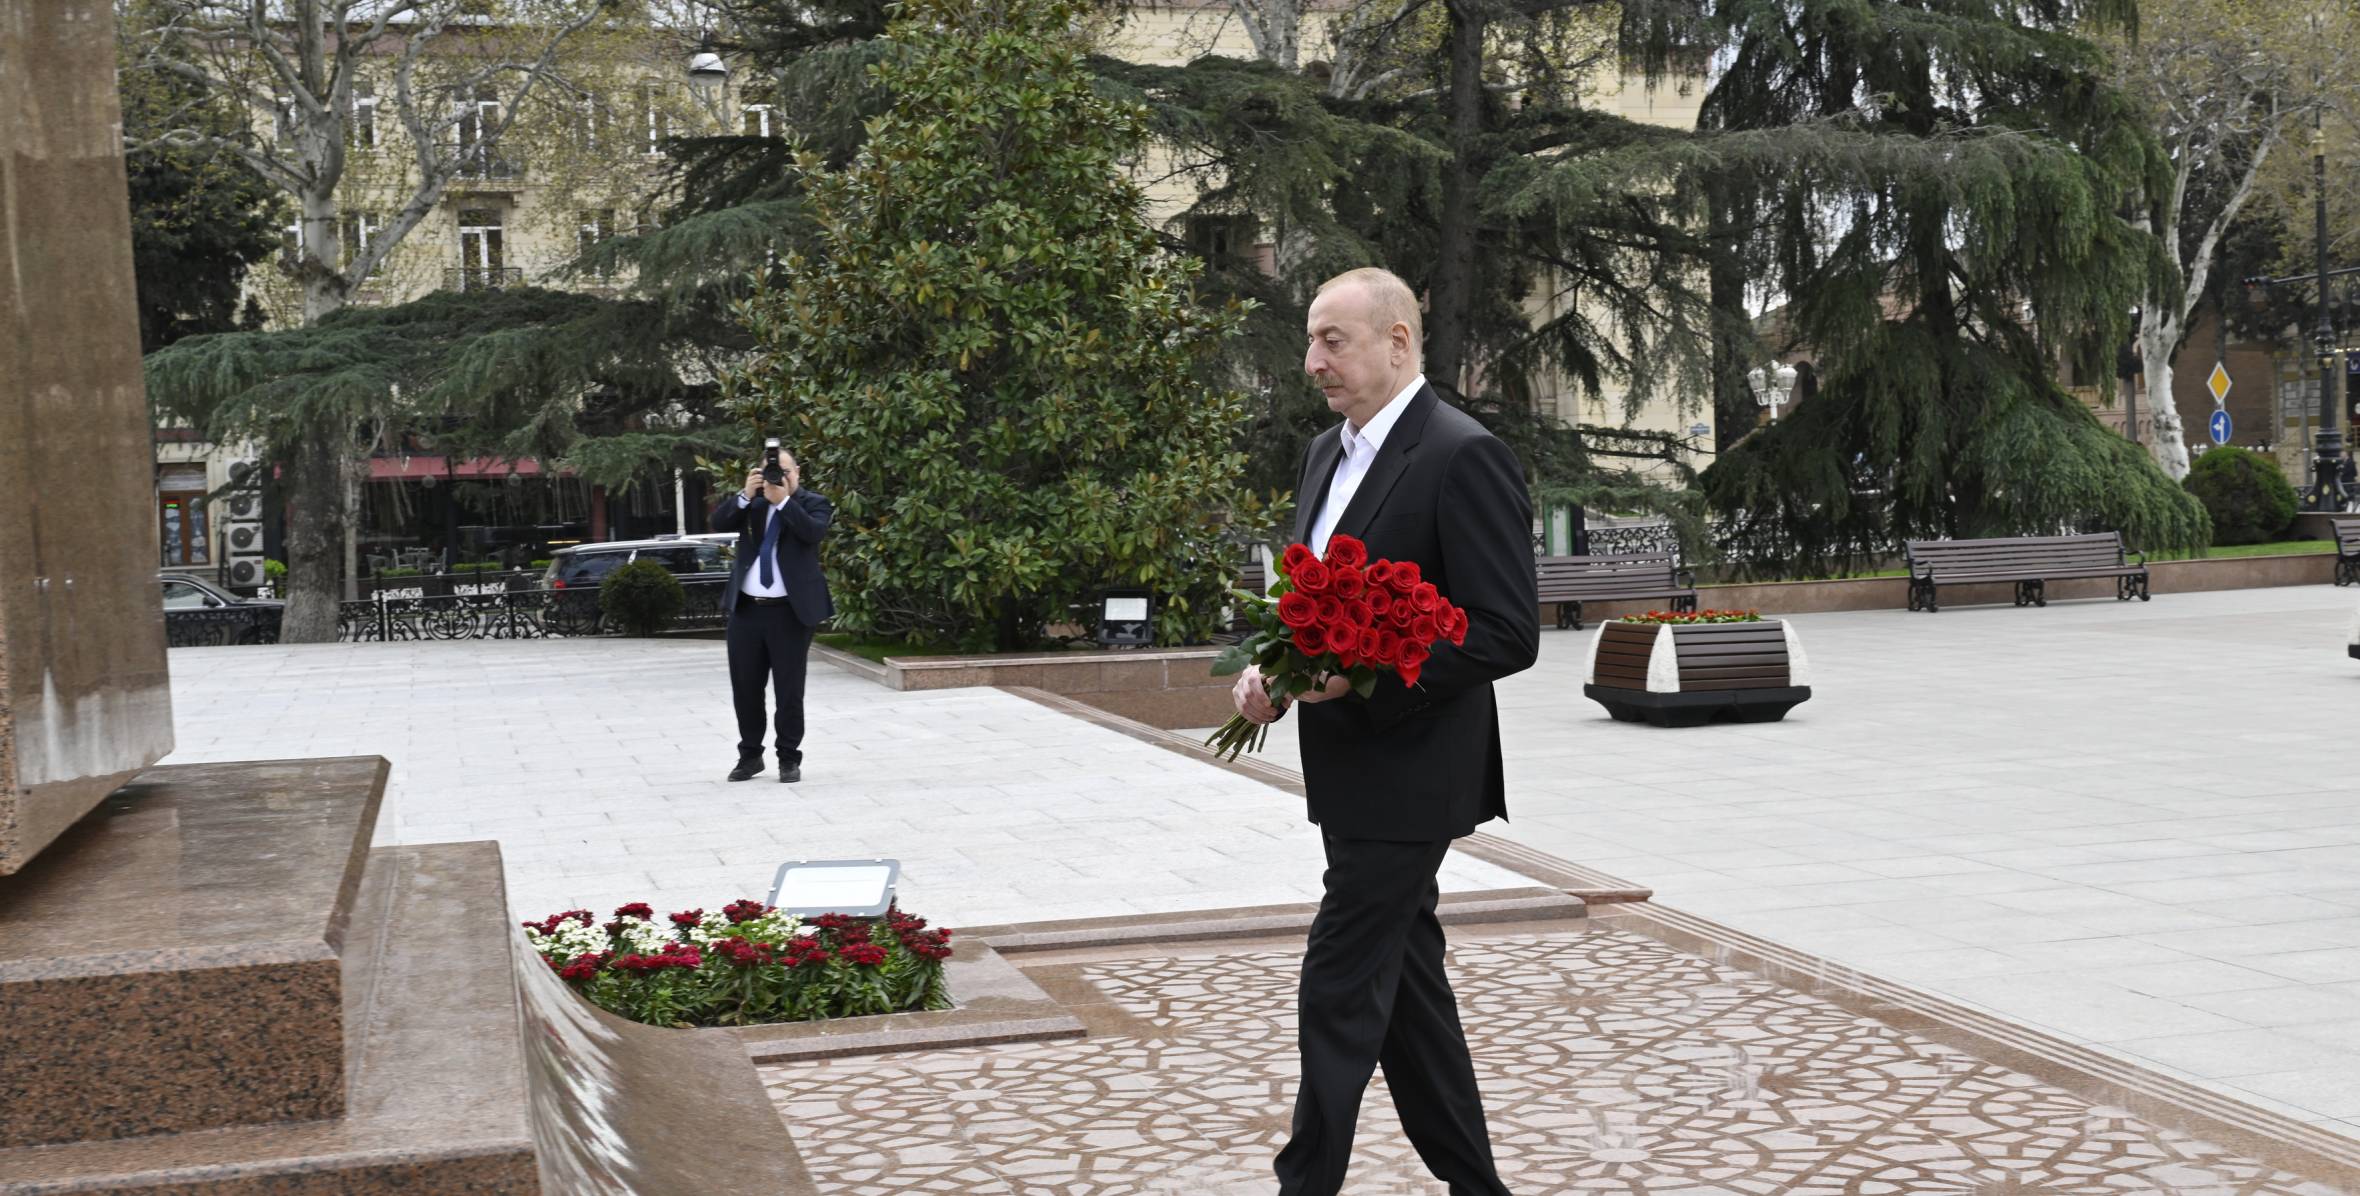 Ilham Aliyev visited statue of Great Leader Heydar Aliyev in Ganja